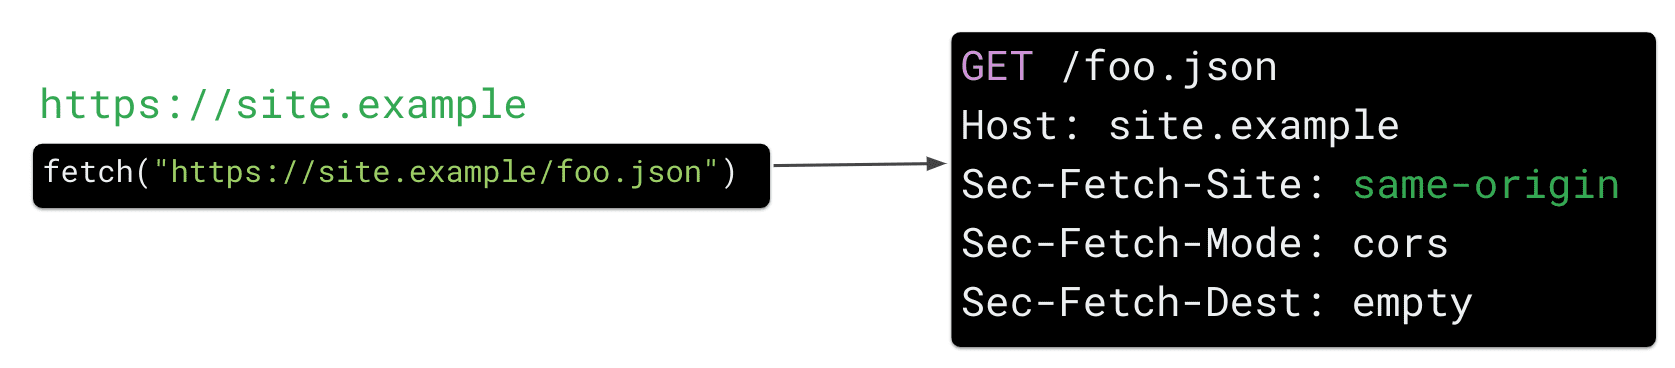 درخواست واکشی از https://site.example برای منبع https://site.example/foo.json در جاوا اسکریپت باعث می شود که مرورگر سرصفحه درخواست HTTP "Sec Fetch-Site: same-origin" را ارسال کند.